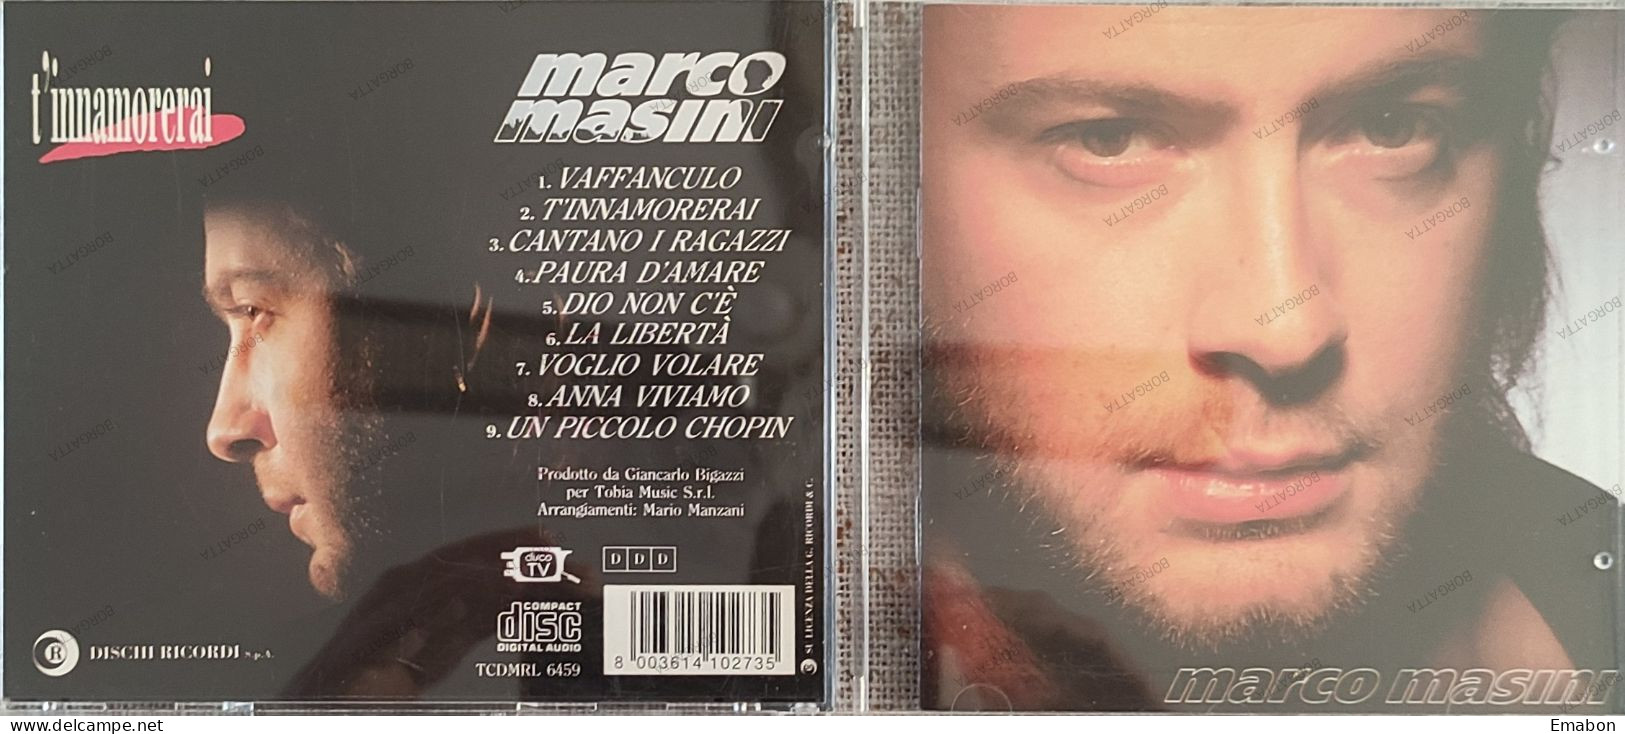 BORGATTA - ITALIANA  - Cd MARCO MASINI - T' INNAMORERAI  - DISCHI RICORDI 1993 -  USATO In Buono Stato - Altri - Musica Italiana